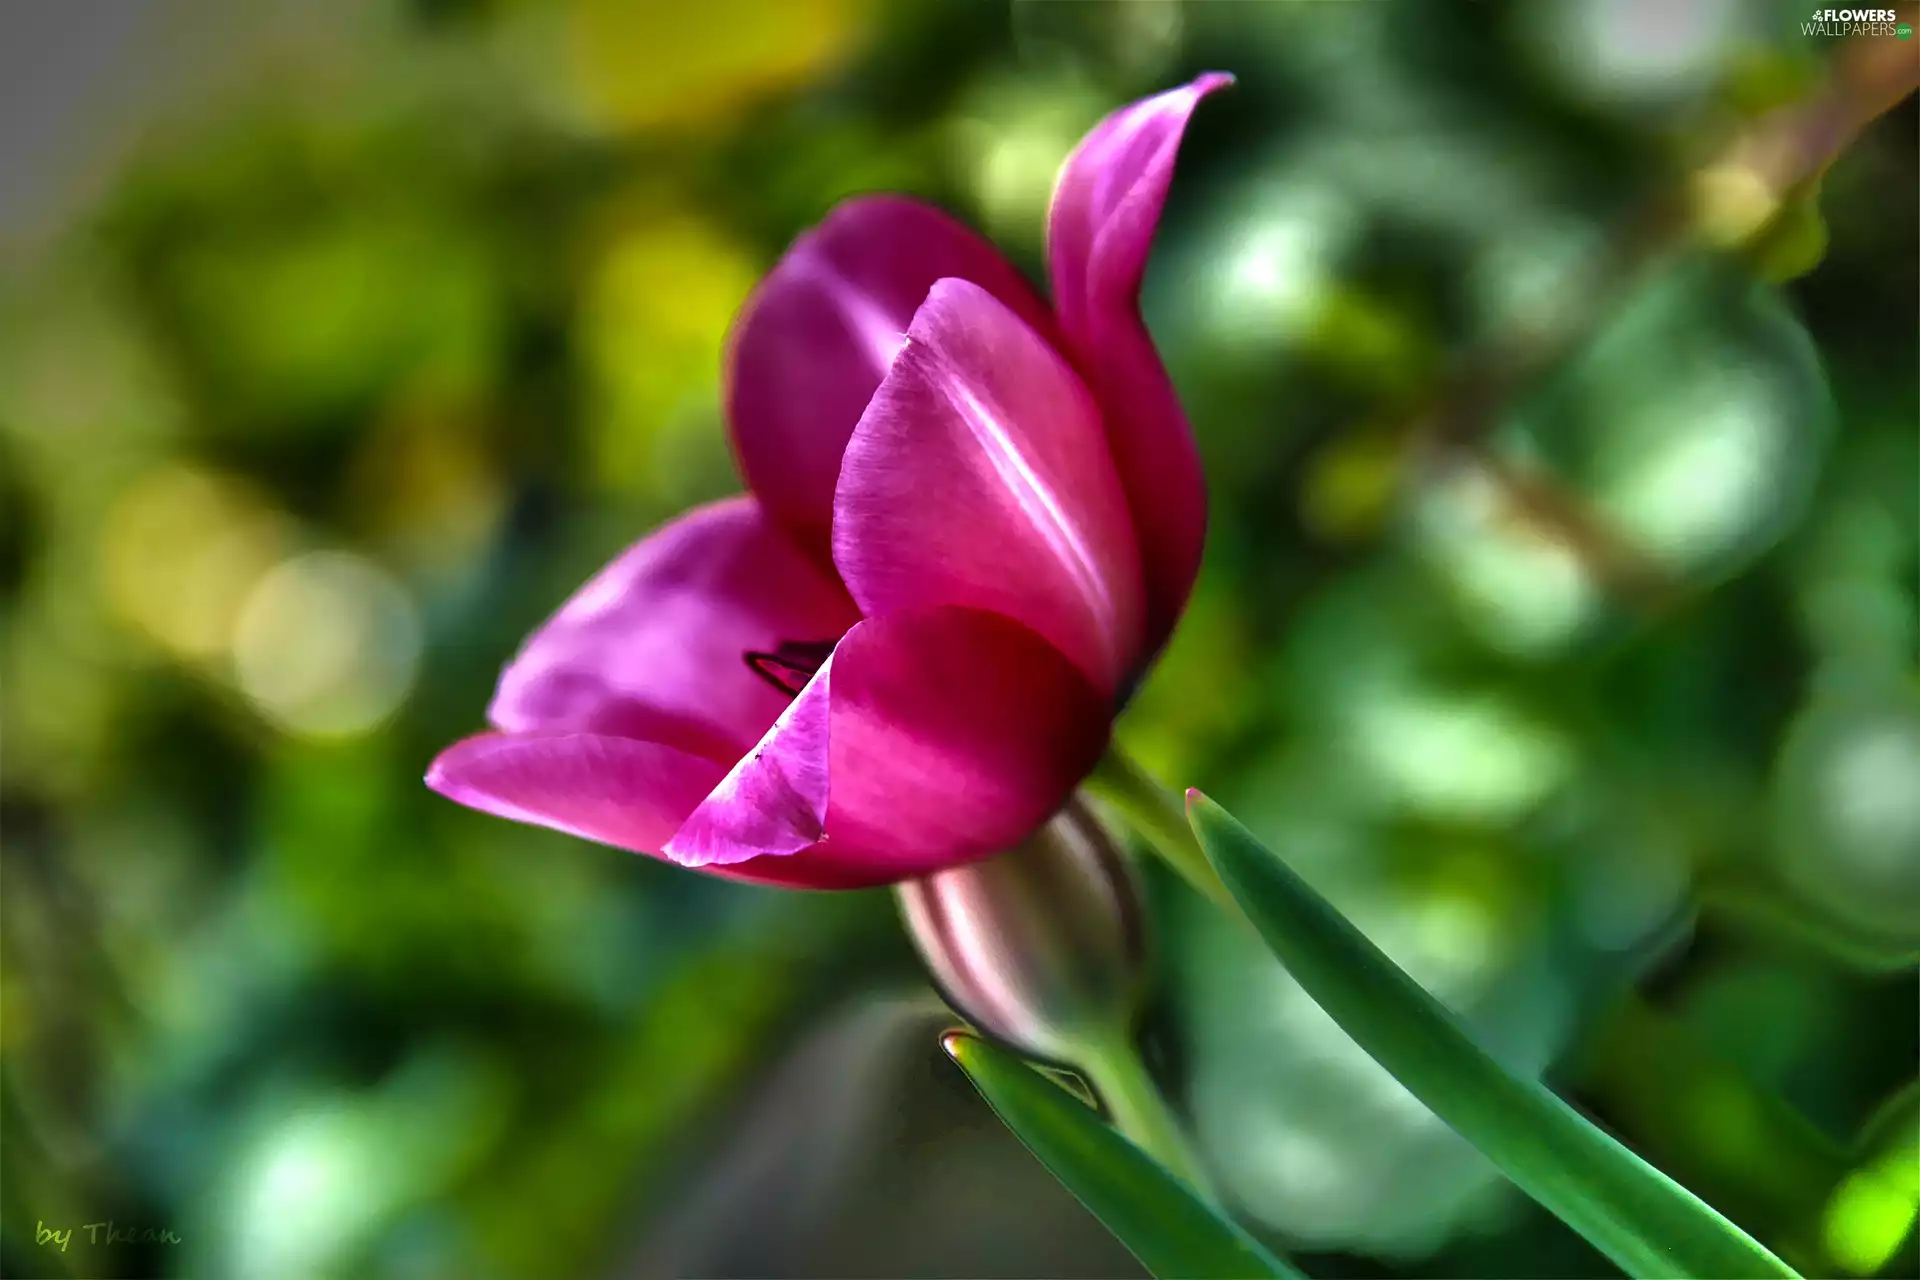 Pink, tulip